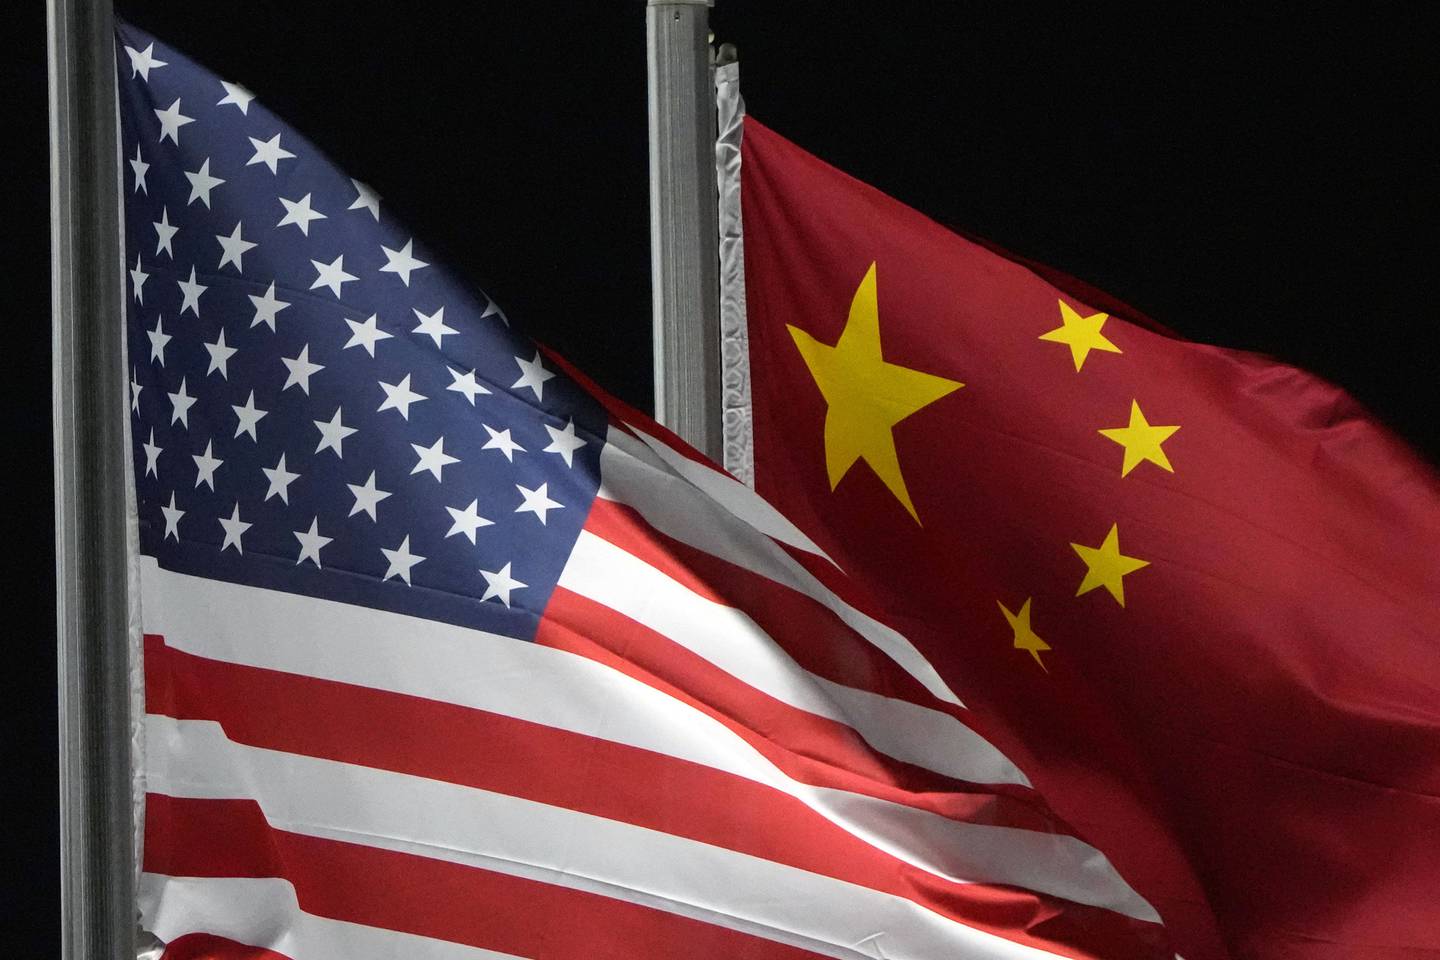 Ballongen som ble skutt ned har skapt forsterket diplomatisk spenning mellom USA og Kina.